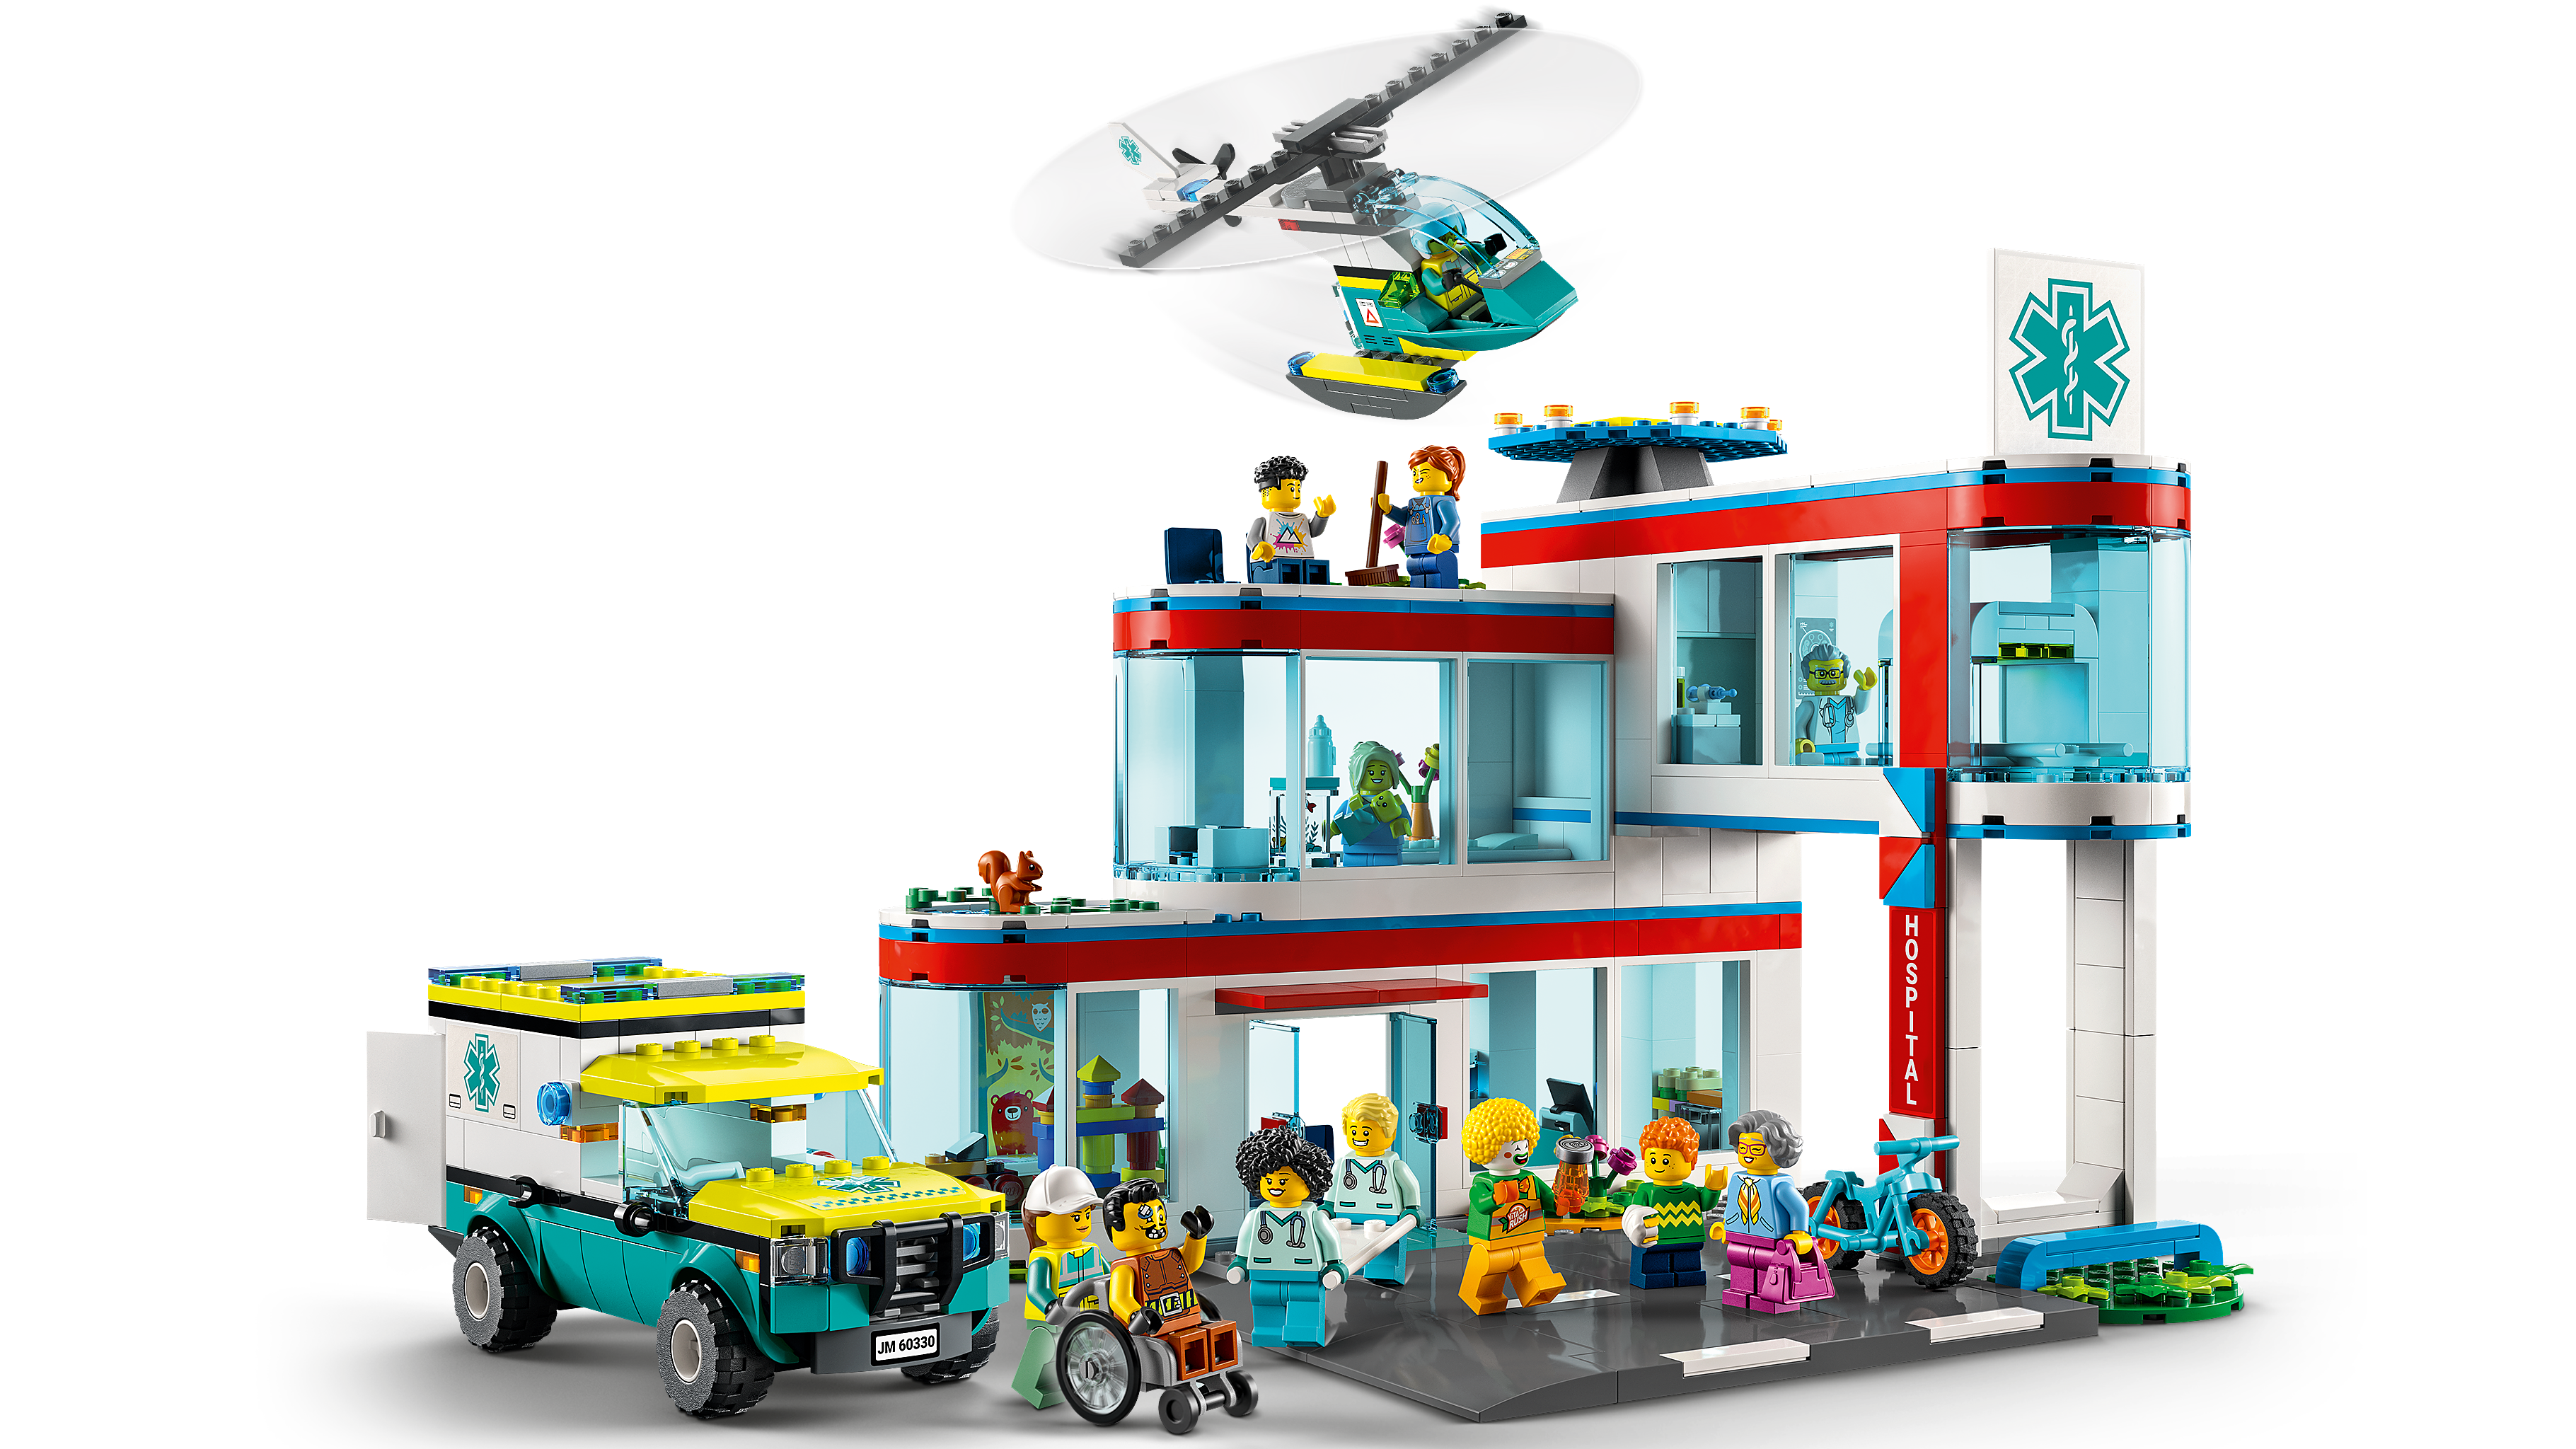 Lego 60330 Hospital